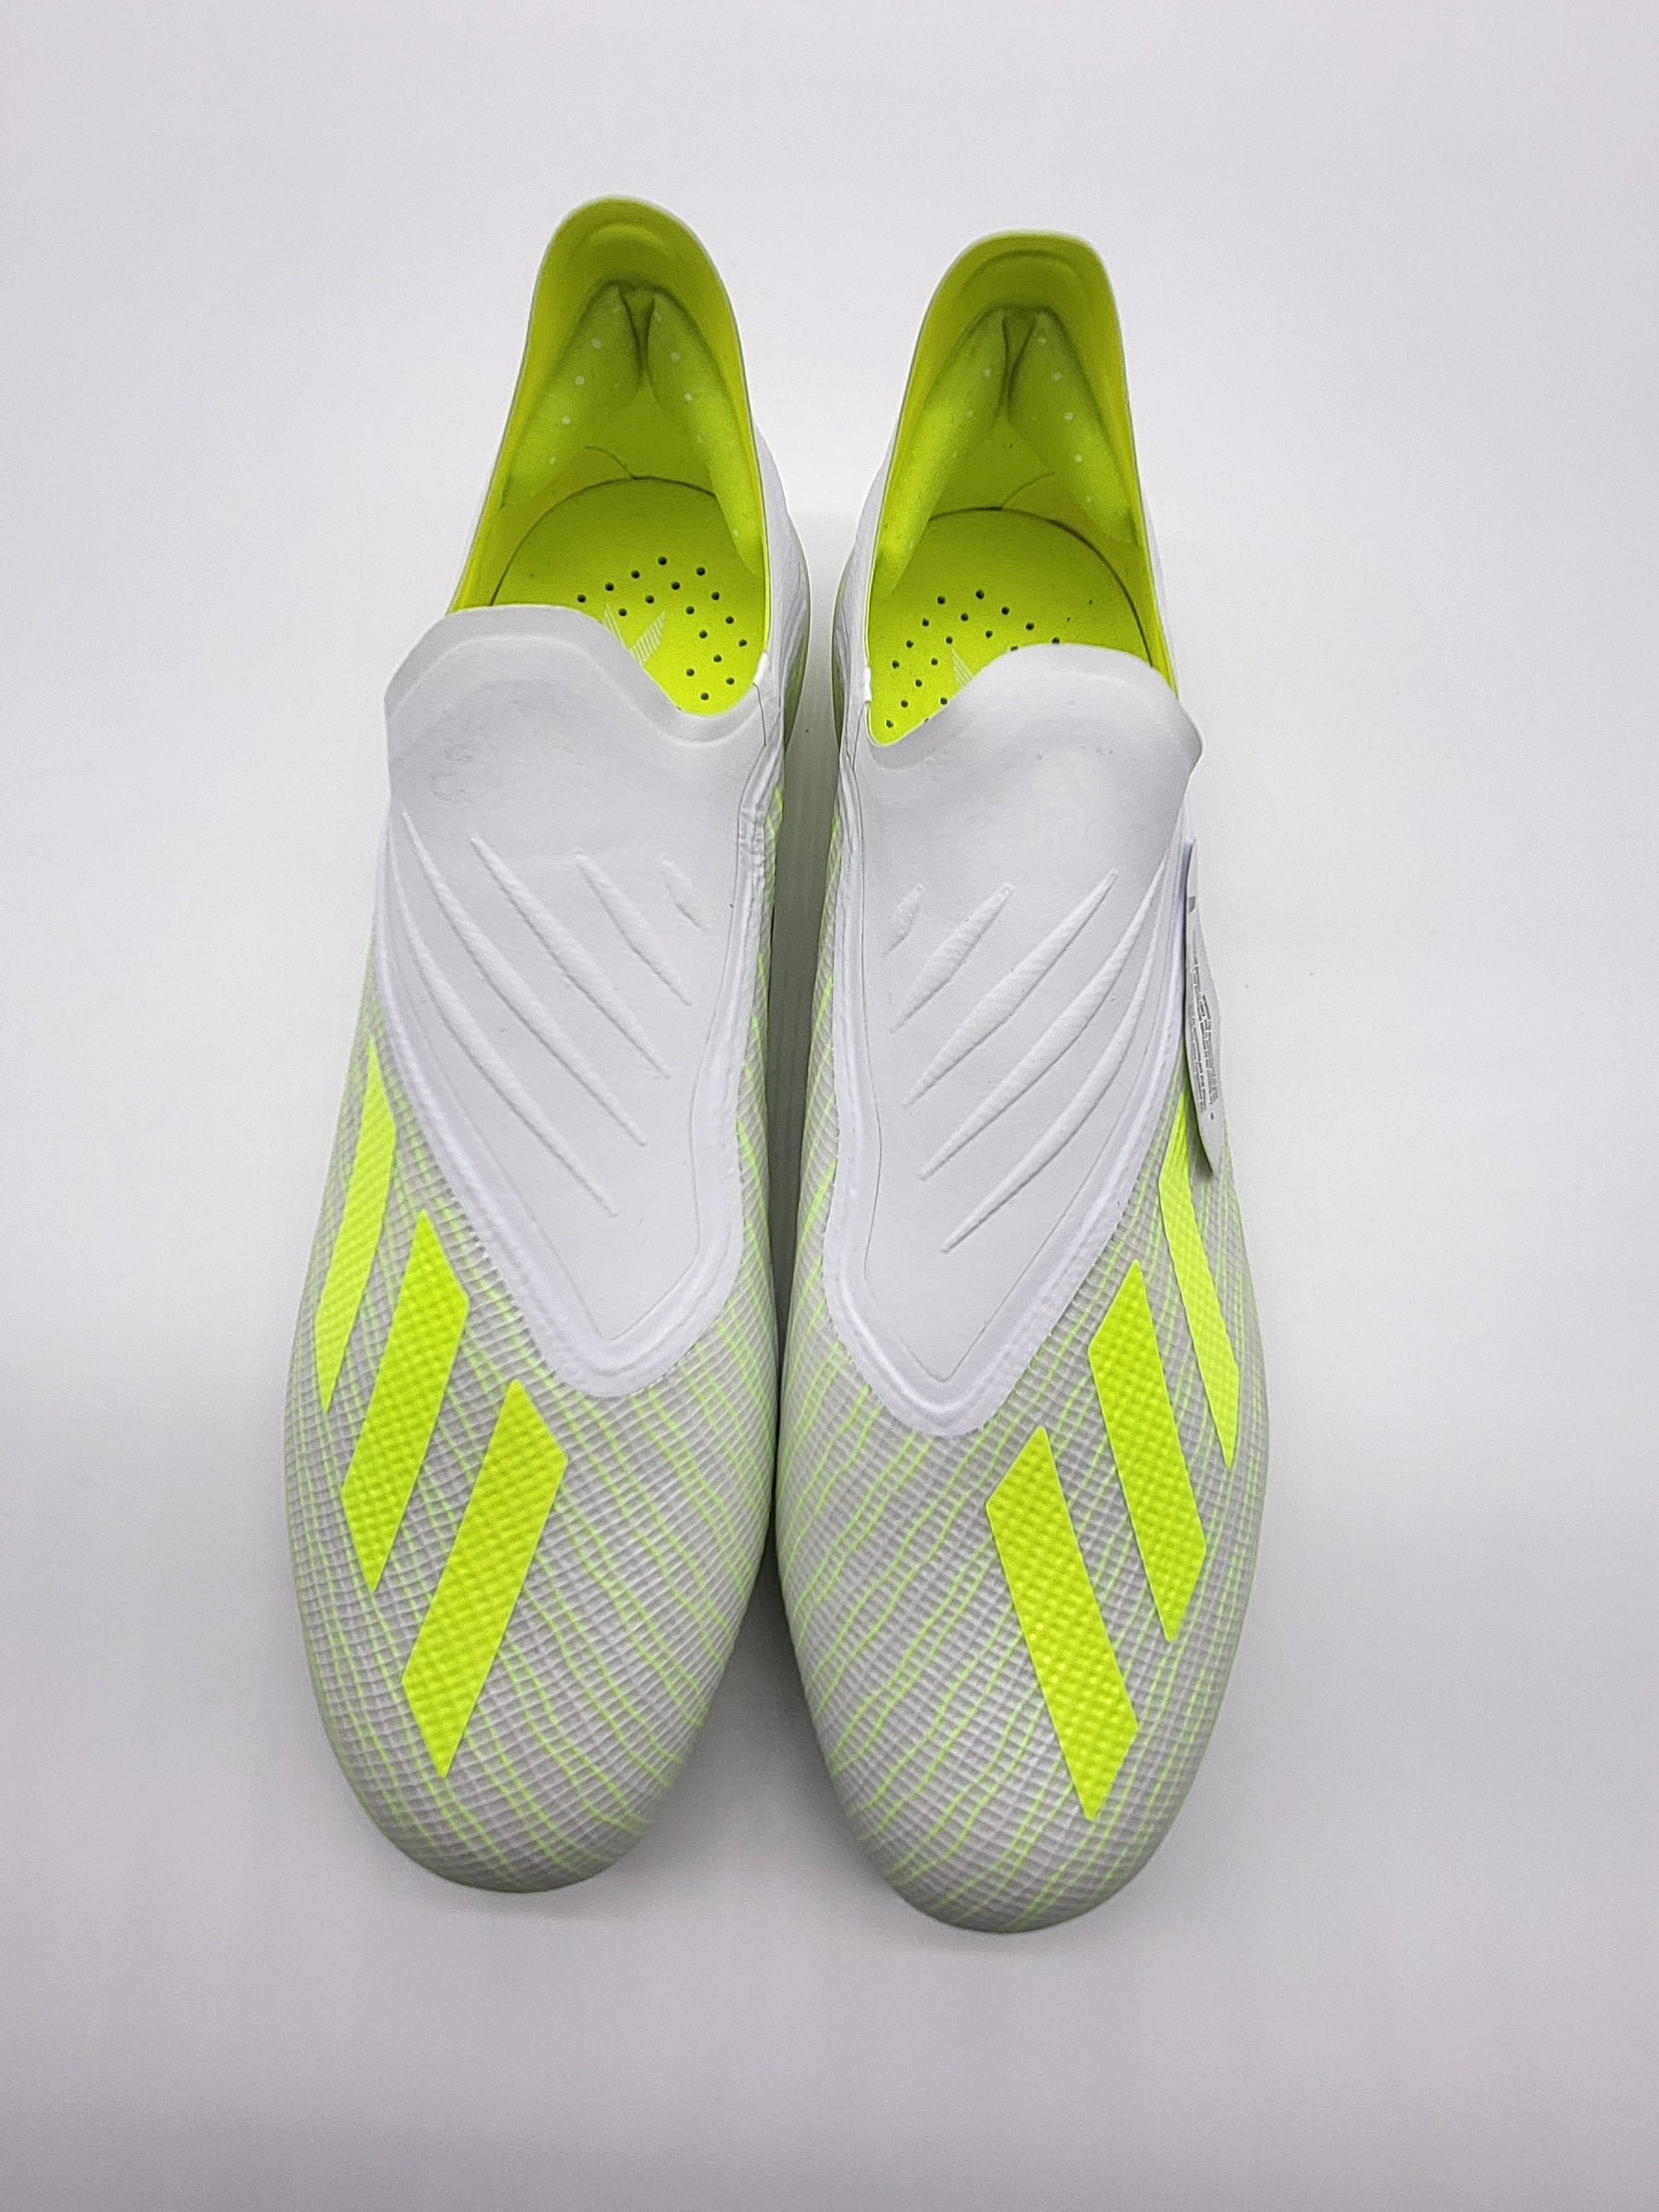 juego Normalización Extranjero Adidas X 18+ FG White Yellow – Villegas Footwear